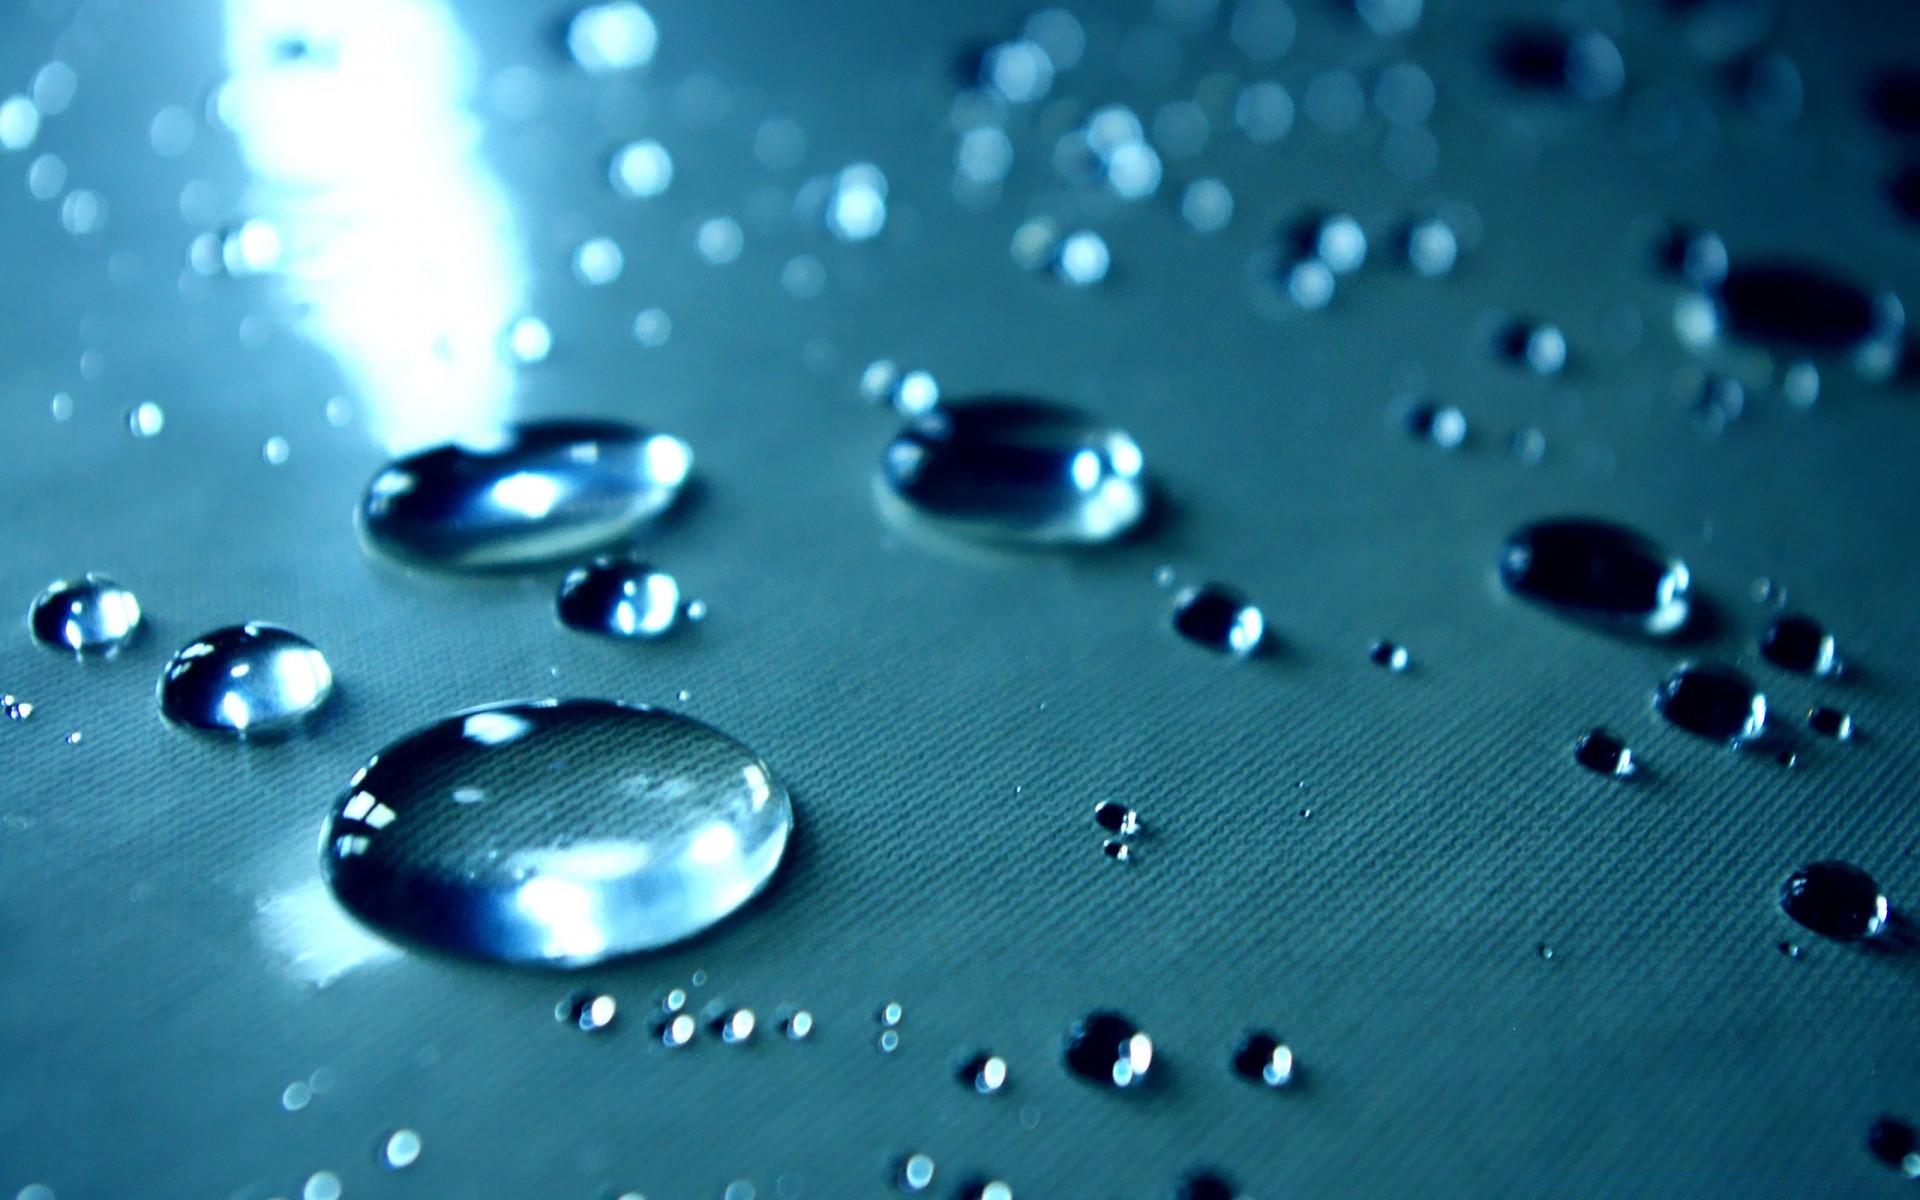 капельки и вода дождь падение мокрый капли росы воды всплеск чистота капли чистые жидкость пузырь отражение понятно потека водослива бирюза гладкая мыть